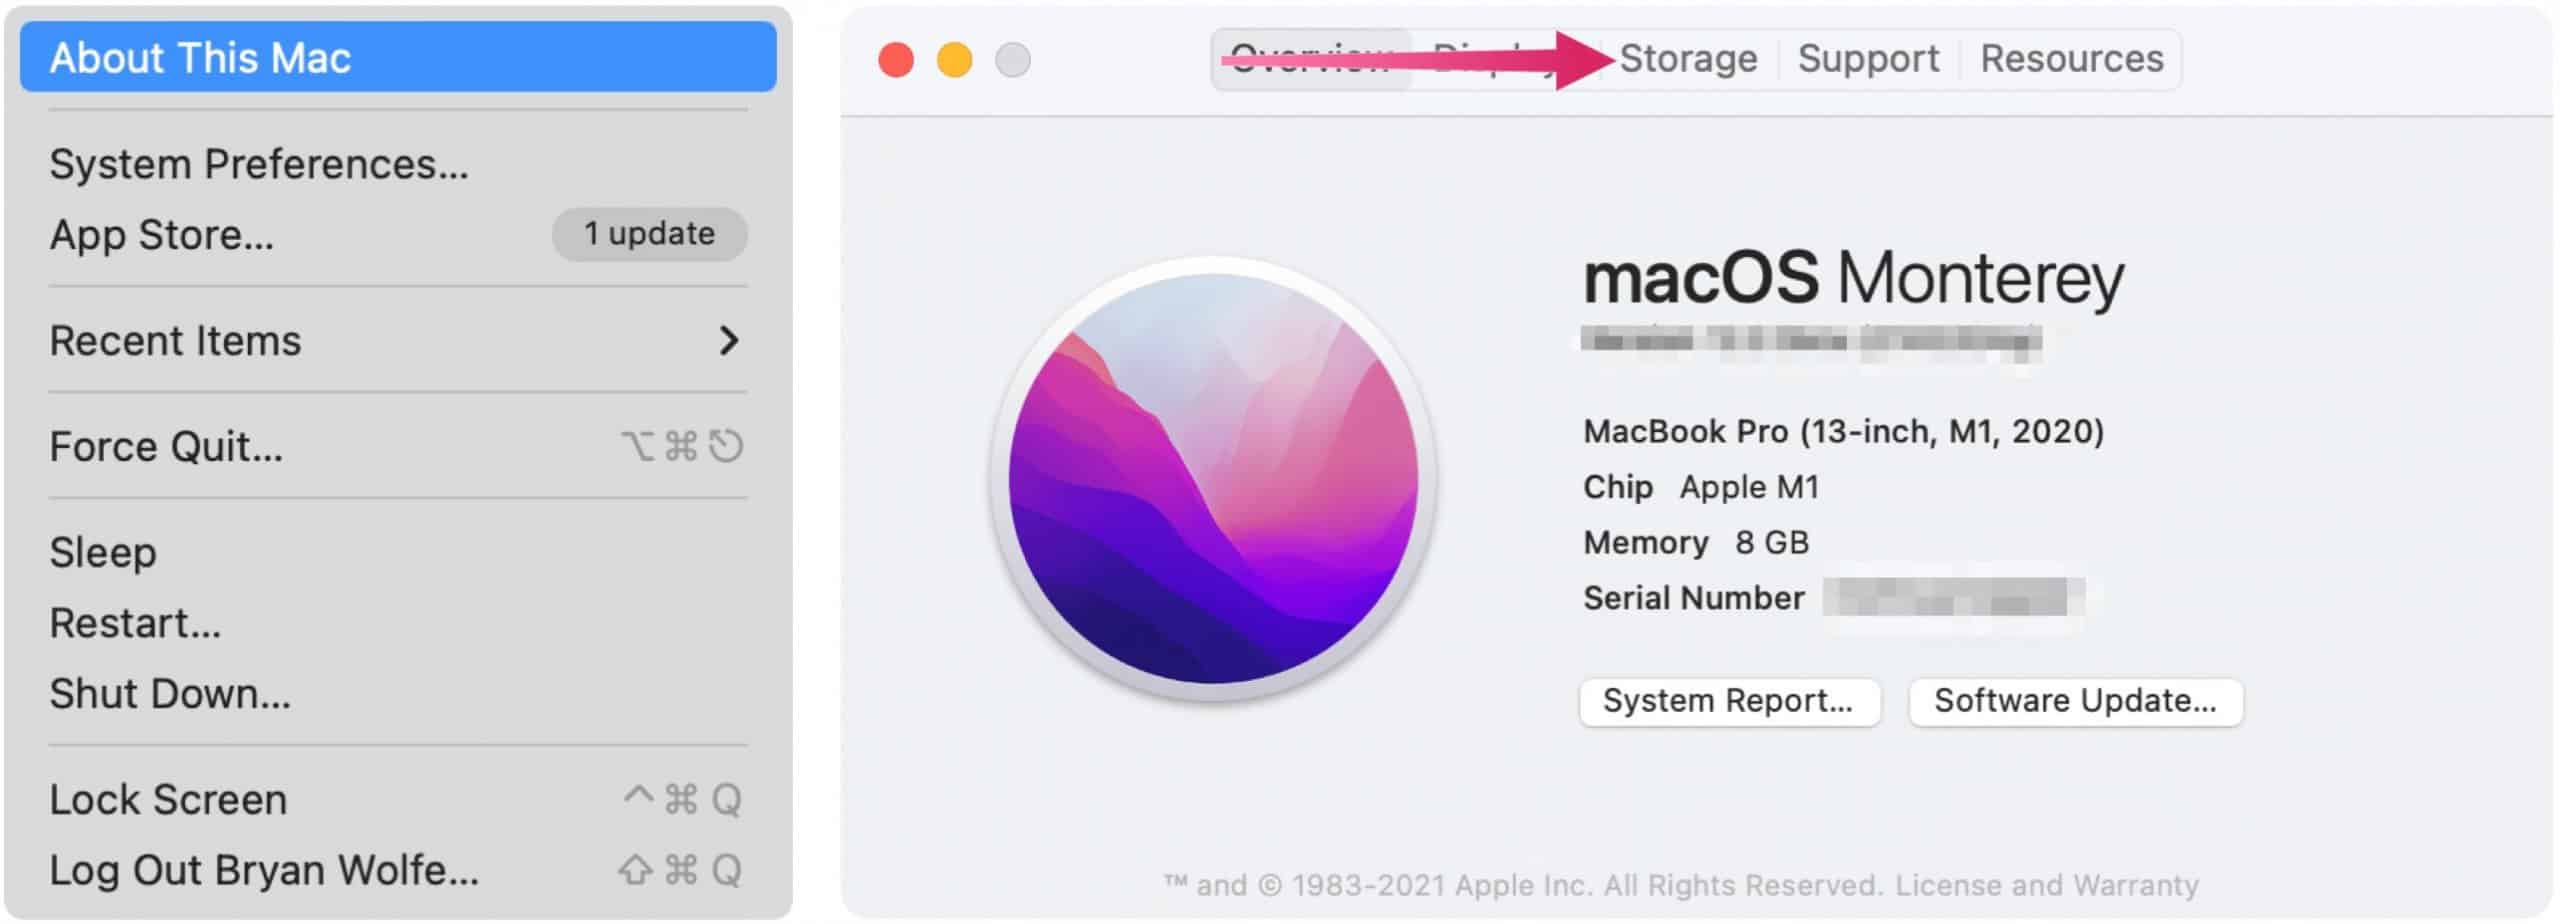 Libérez de l'espace de stockage sur ce Mac